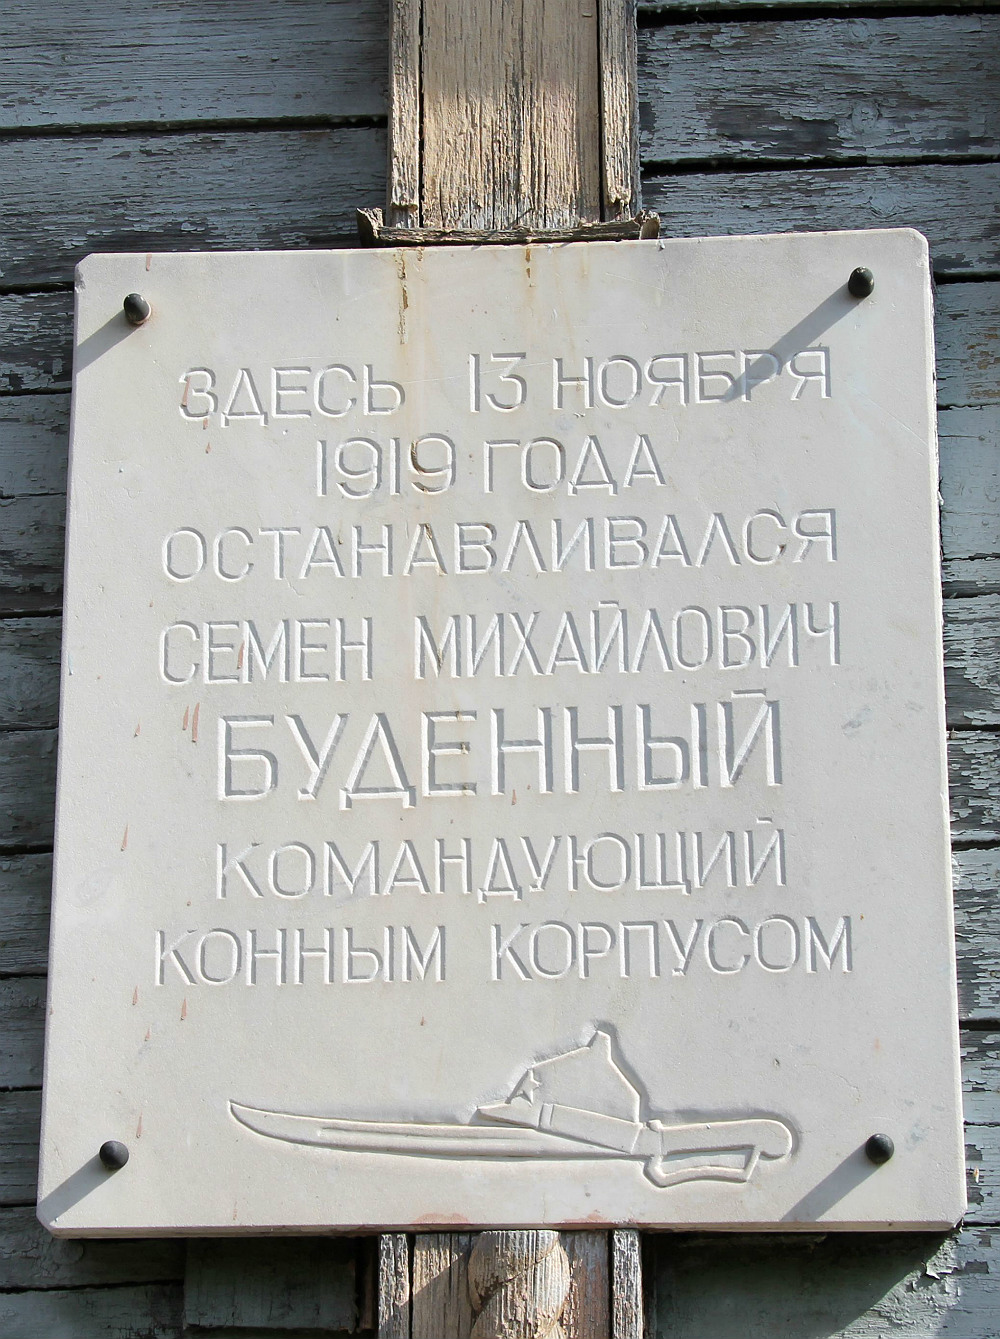 Нижнедевицкий район, прочие н.п., . Нижнедевицкий район, прочие н.п. — Memorial plaques